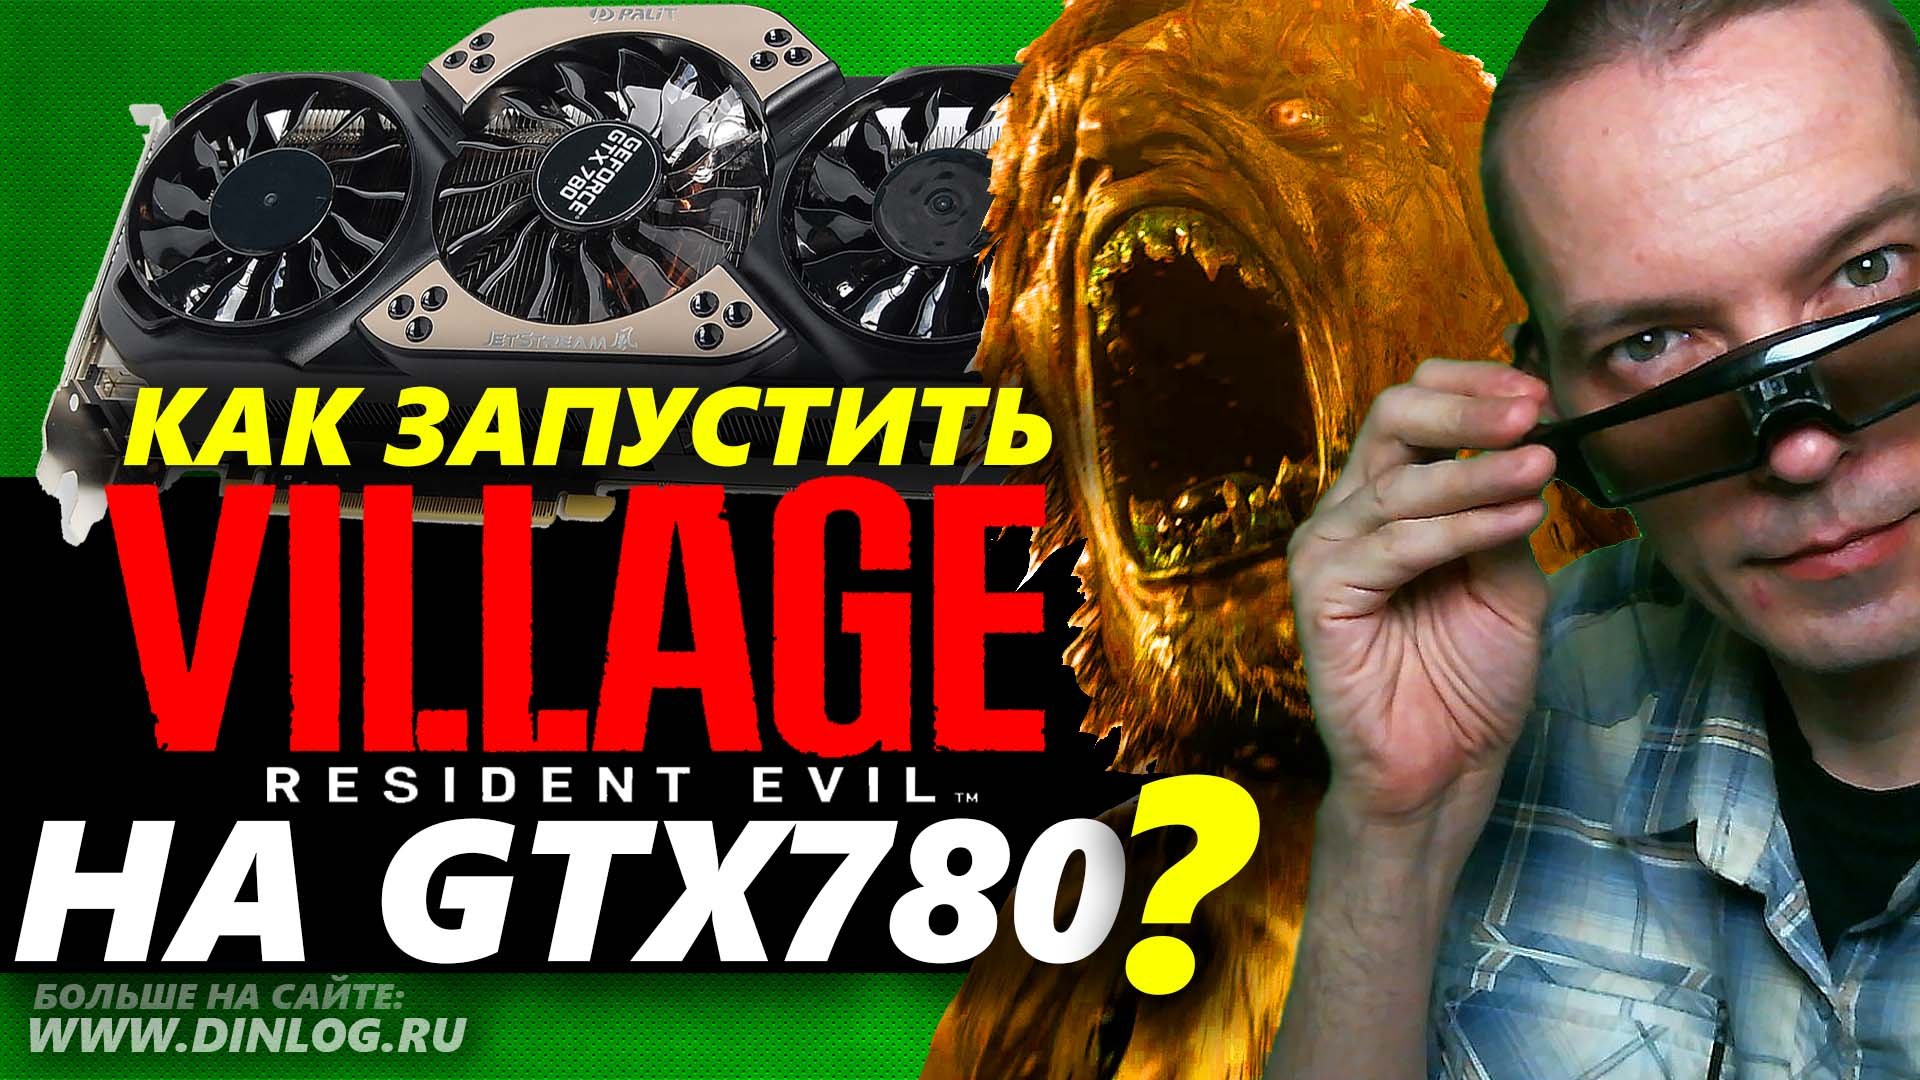 Как запустить игру Resident Evil The Village на видеокарте Nvidia GTX 780?